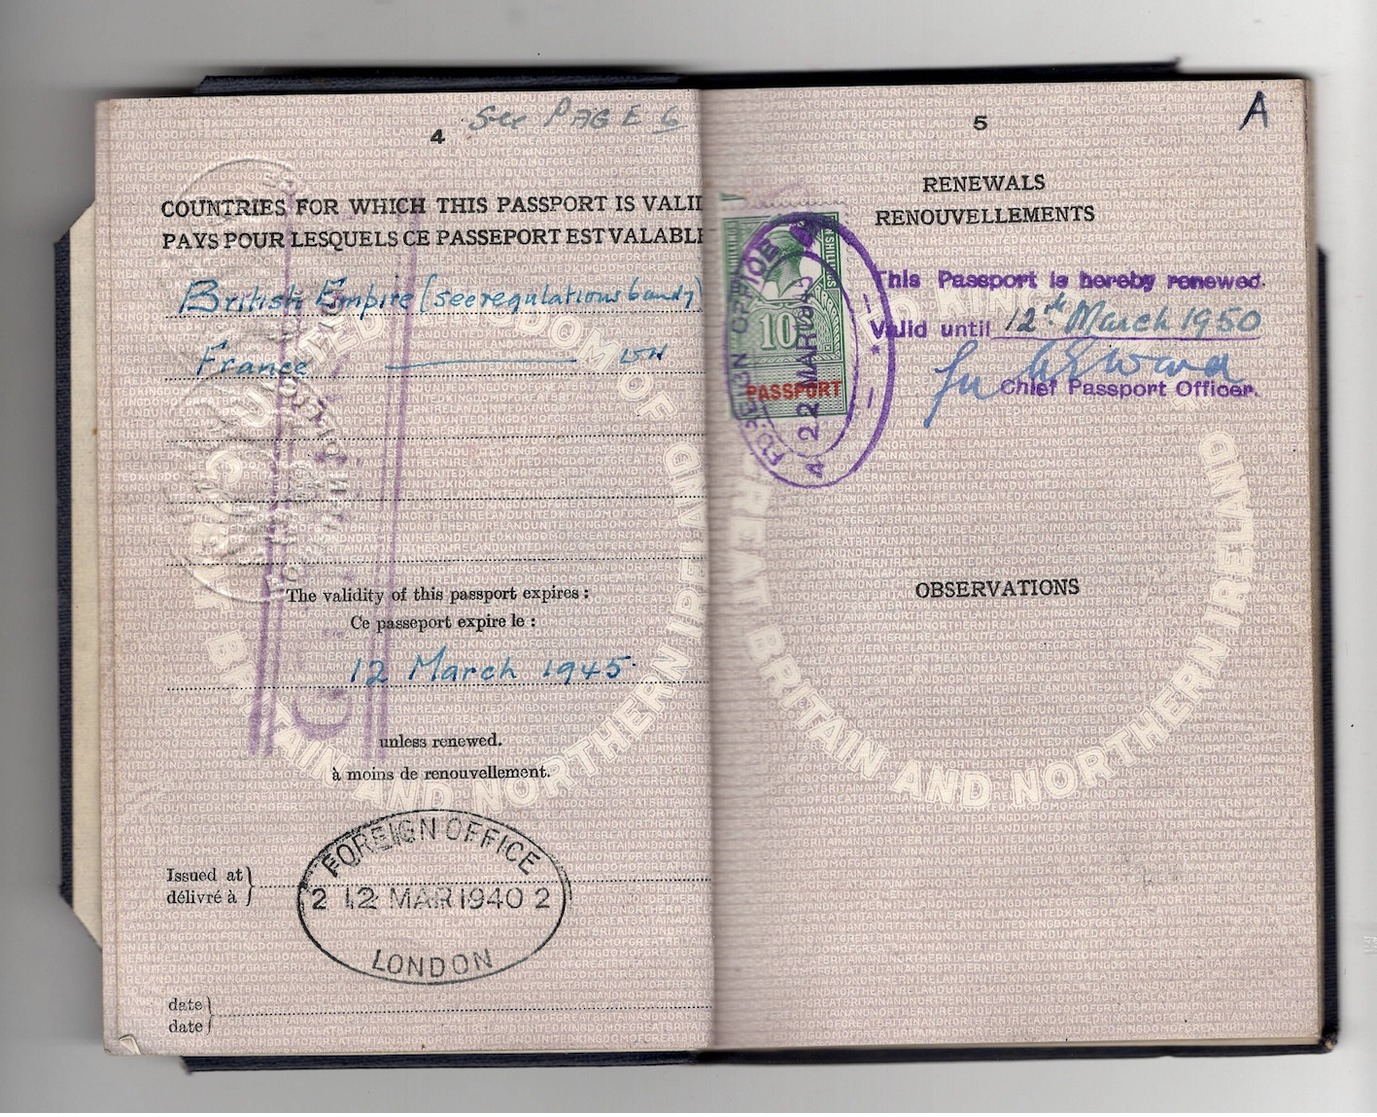 WW2 Passeport United Kingdom 1940/1945. Fiscaux France Et étranger, "affaires étrangères GRATIS", Nbx Cachets Consulats. - Documents Historiques